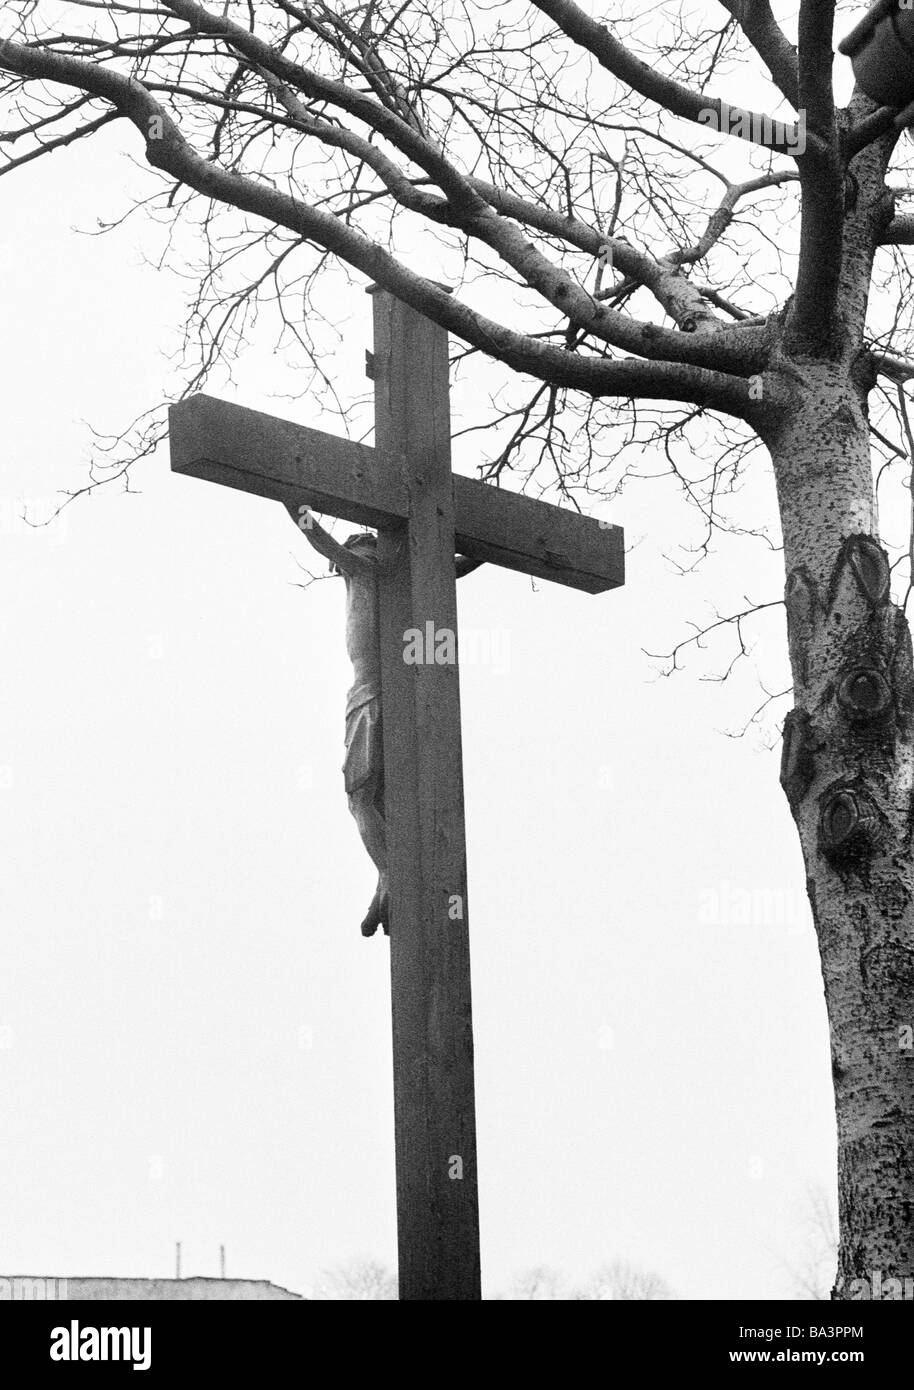 70er Jahre, schwarz / weiß Foto, Religion, Christentum, Wayside Kreuz in der Nähe von einer Birke Baum, D-Bottrop, Ruhrgebiet, Nordrhein-Westfalen Stockfoto